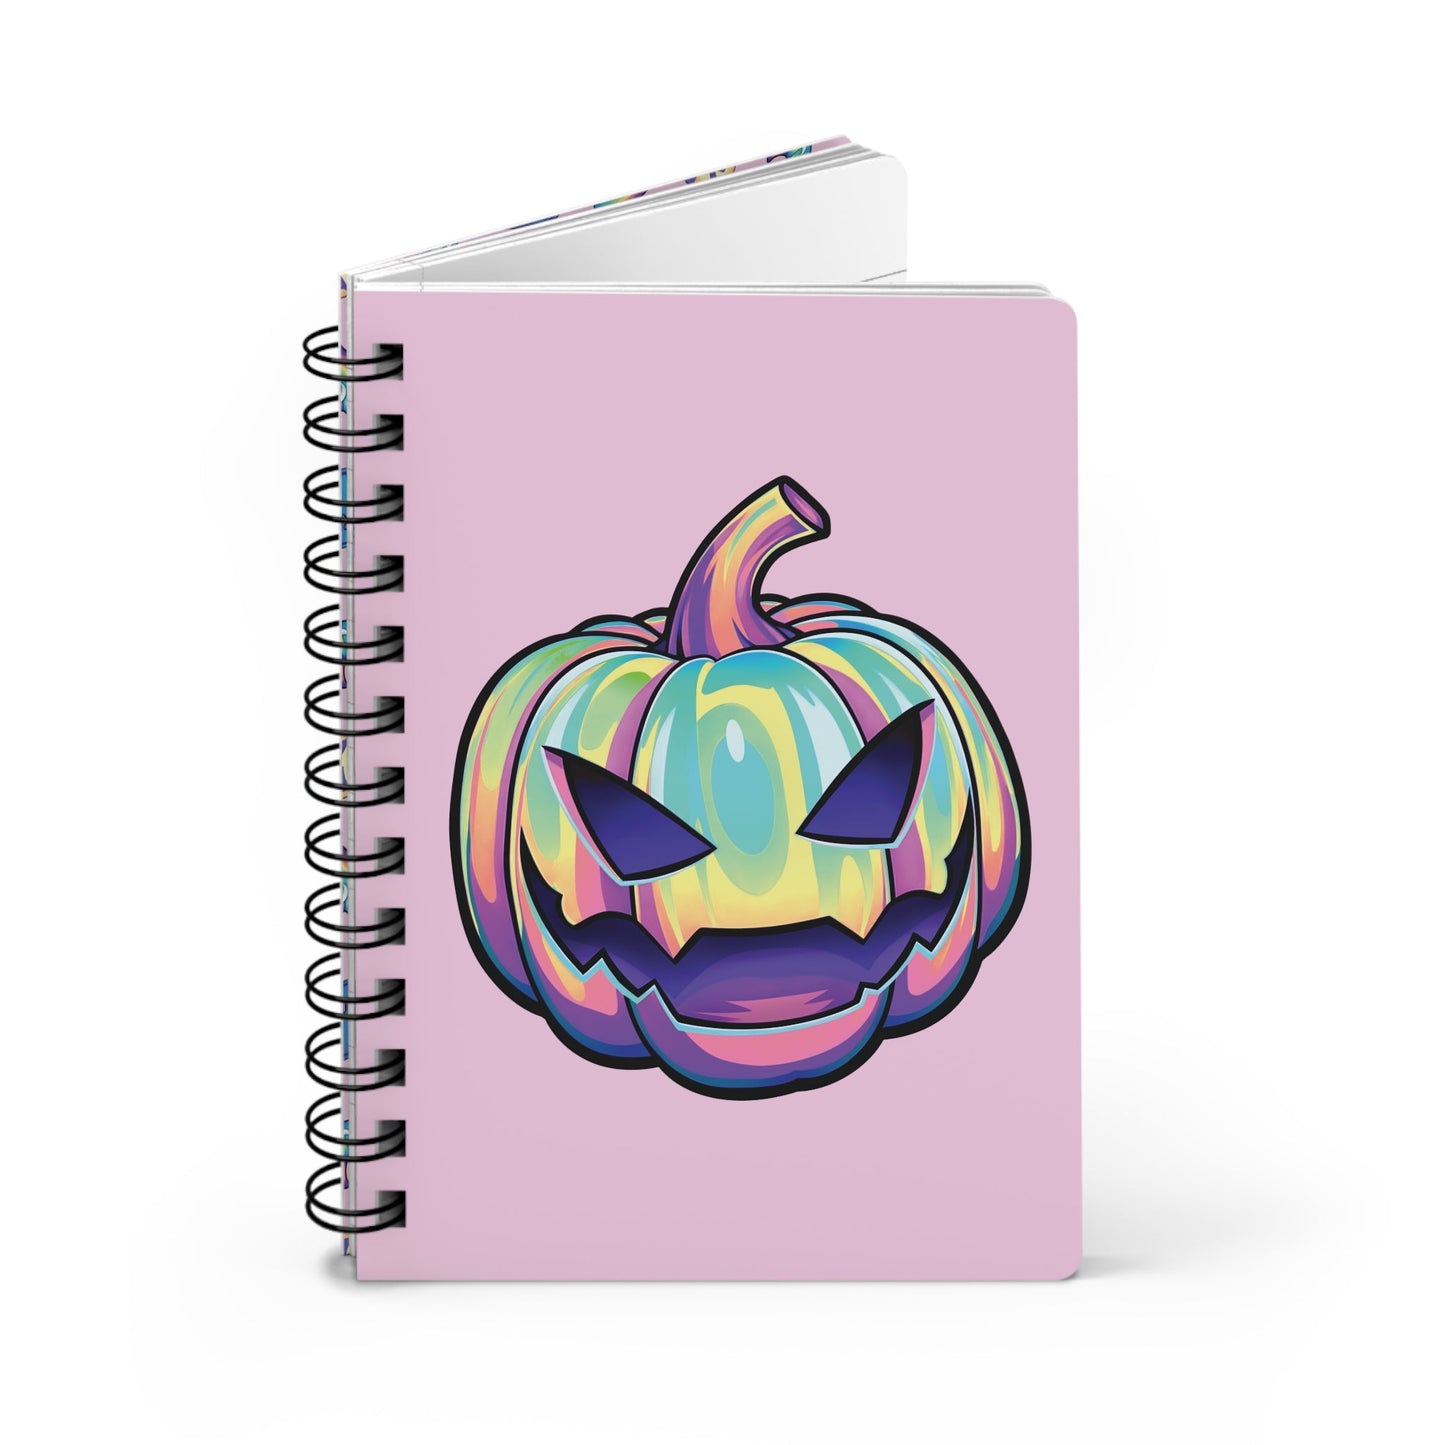 Joke-o'-Lantern Spiral Bound Journal - Pink - Driftless Enchantments